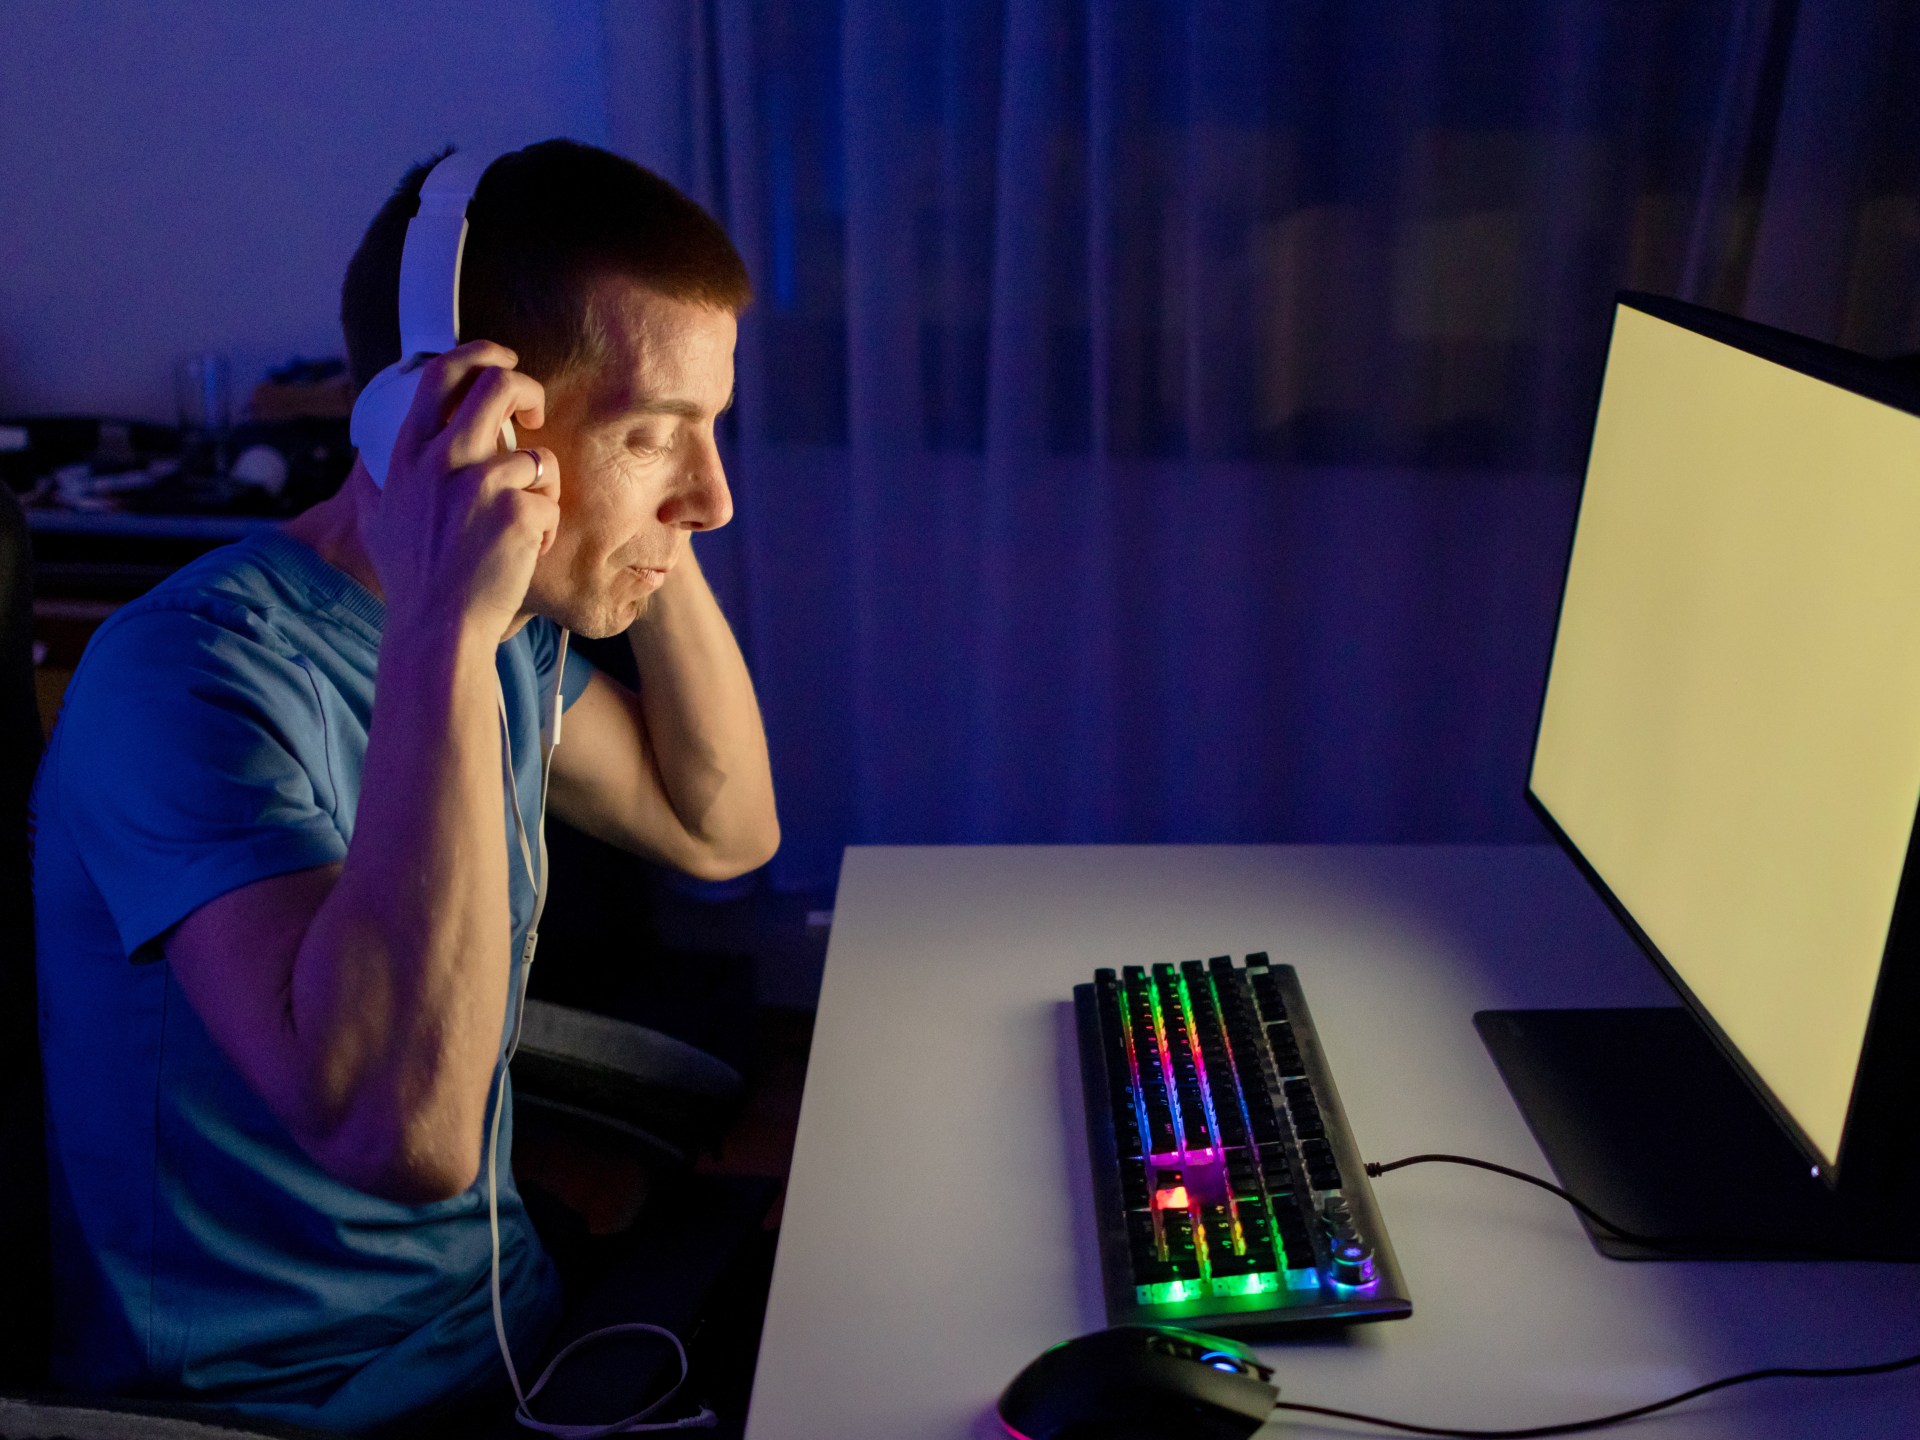 أطباء يحذرون من خطورة ألعاب الفيديو على الأذن وحاسة السمع | صحة – البوكس نيوز